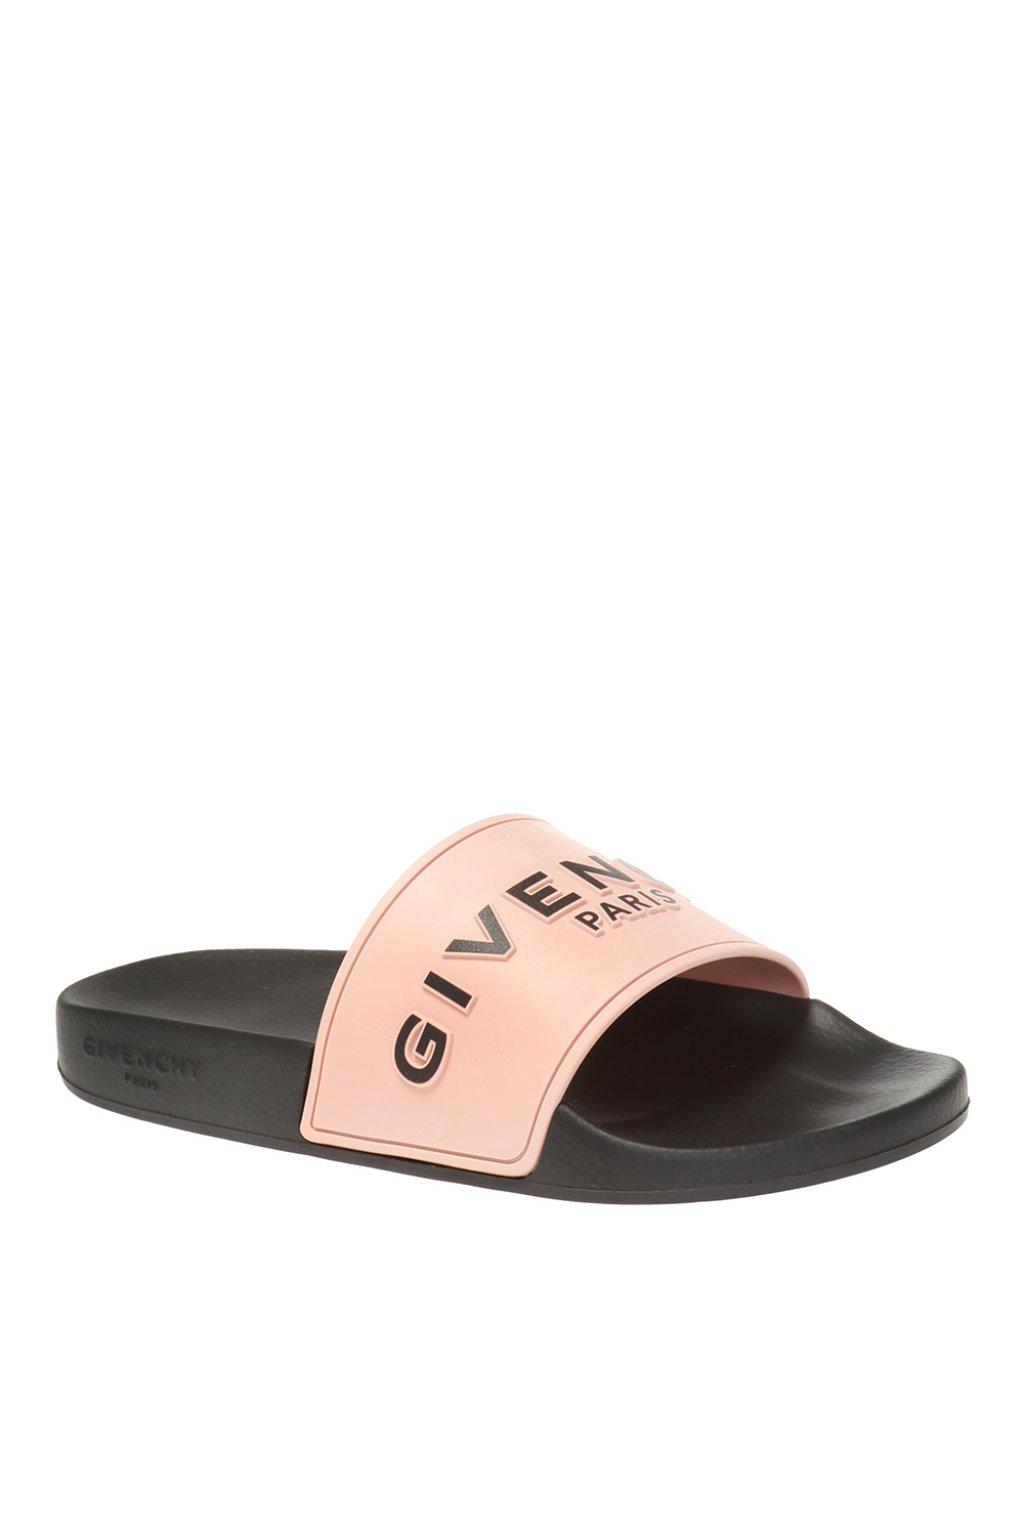 Givenchy Logo Rubber Slide Sandals in 